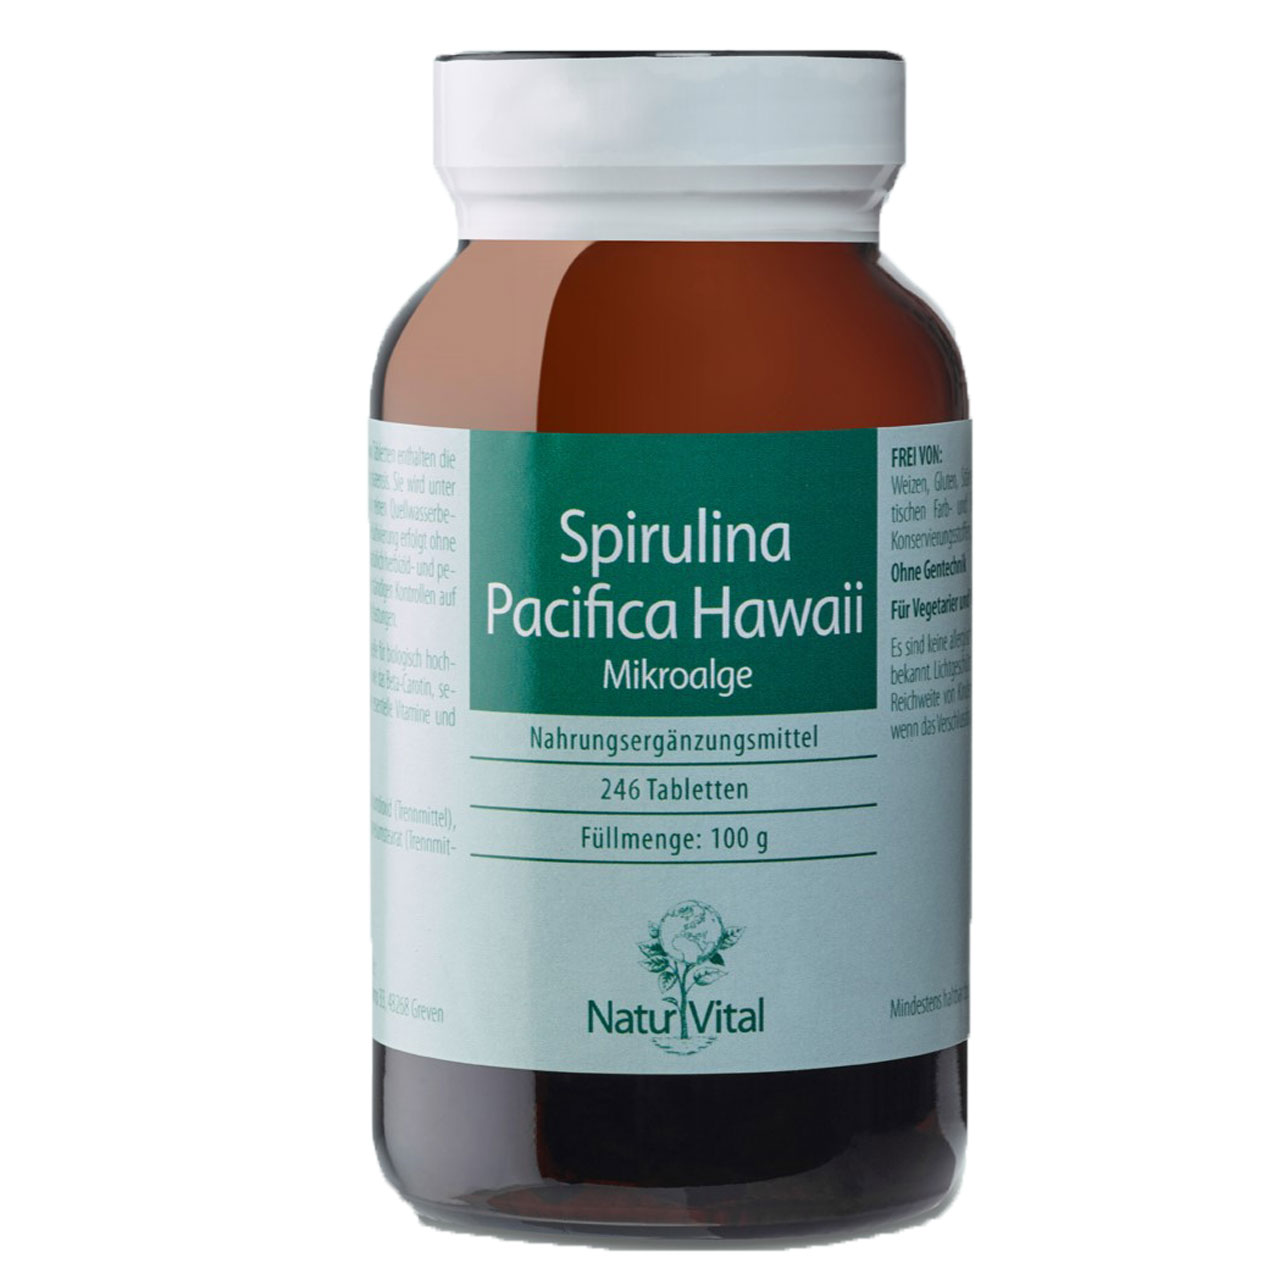 Spirulina Pacifica Hawaii von Natur Vital beinhaltet 200 Tabletten